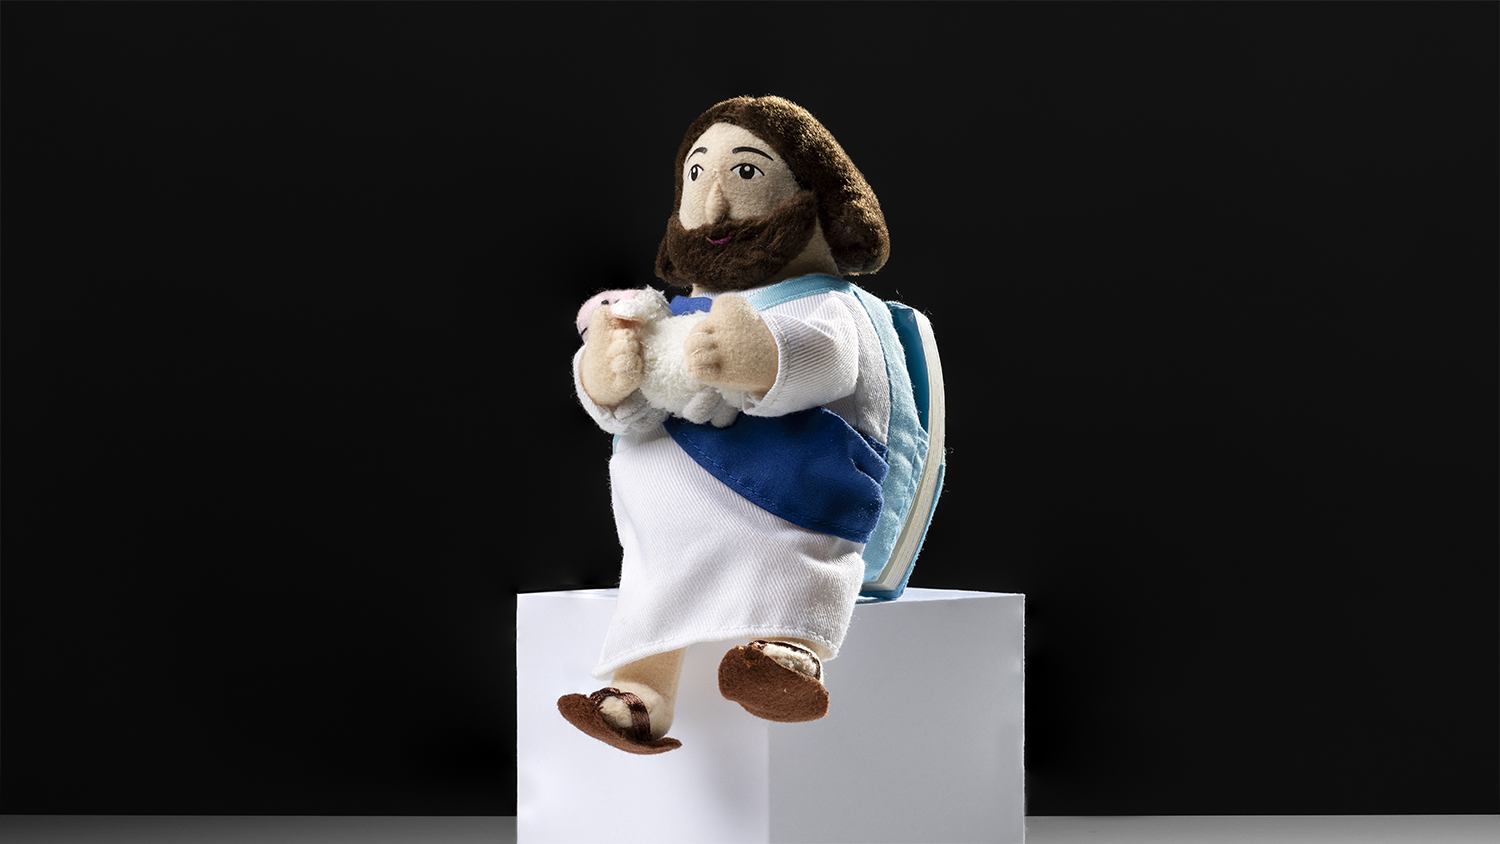 En liten textil figur av Jesus som håller i ett lamm